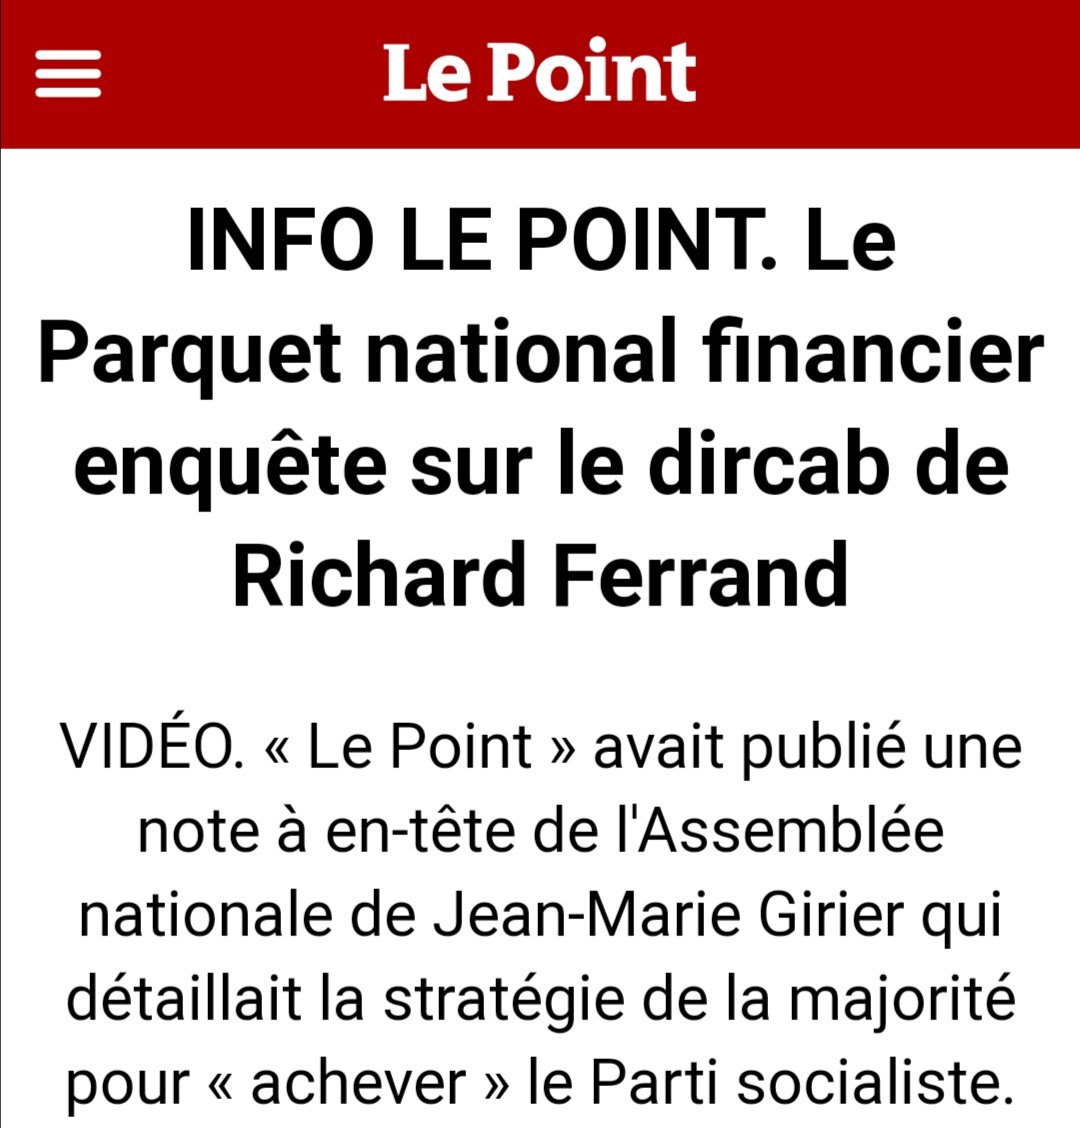 J-M Girier, directeur de cabinet de R. Ferrand intéresse le PNF pour une possible affaire de détournements de biens publics.